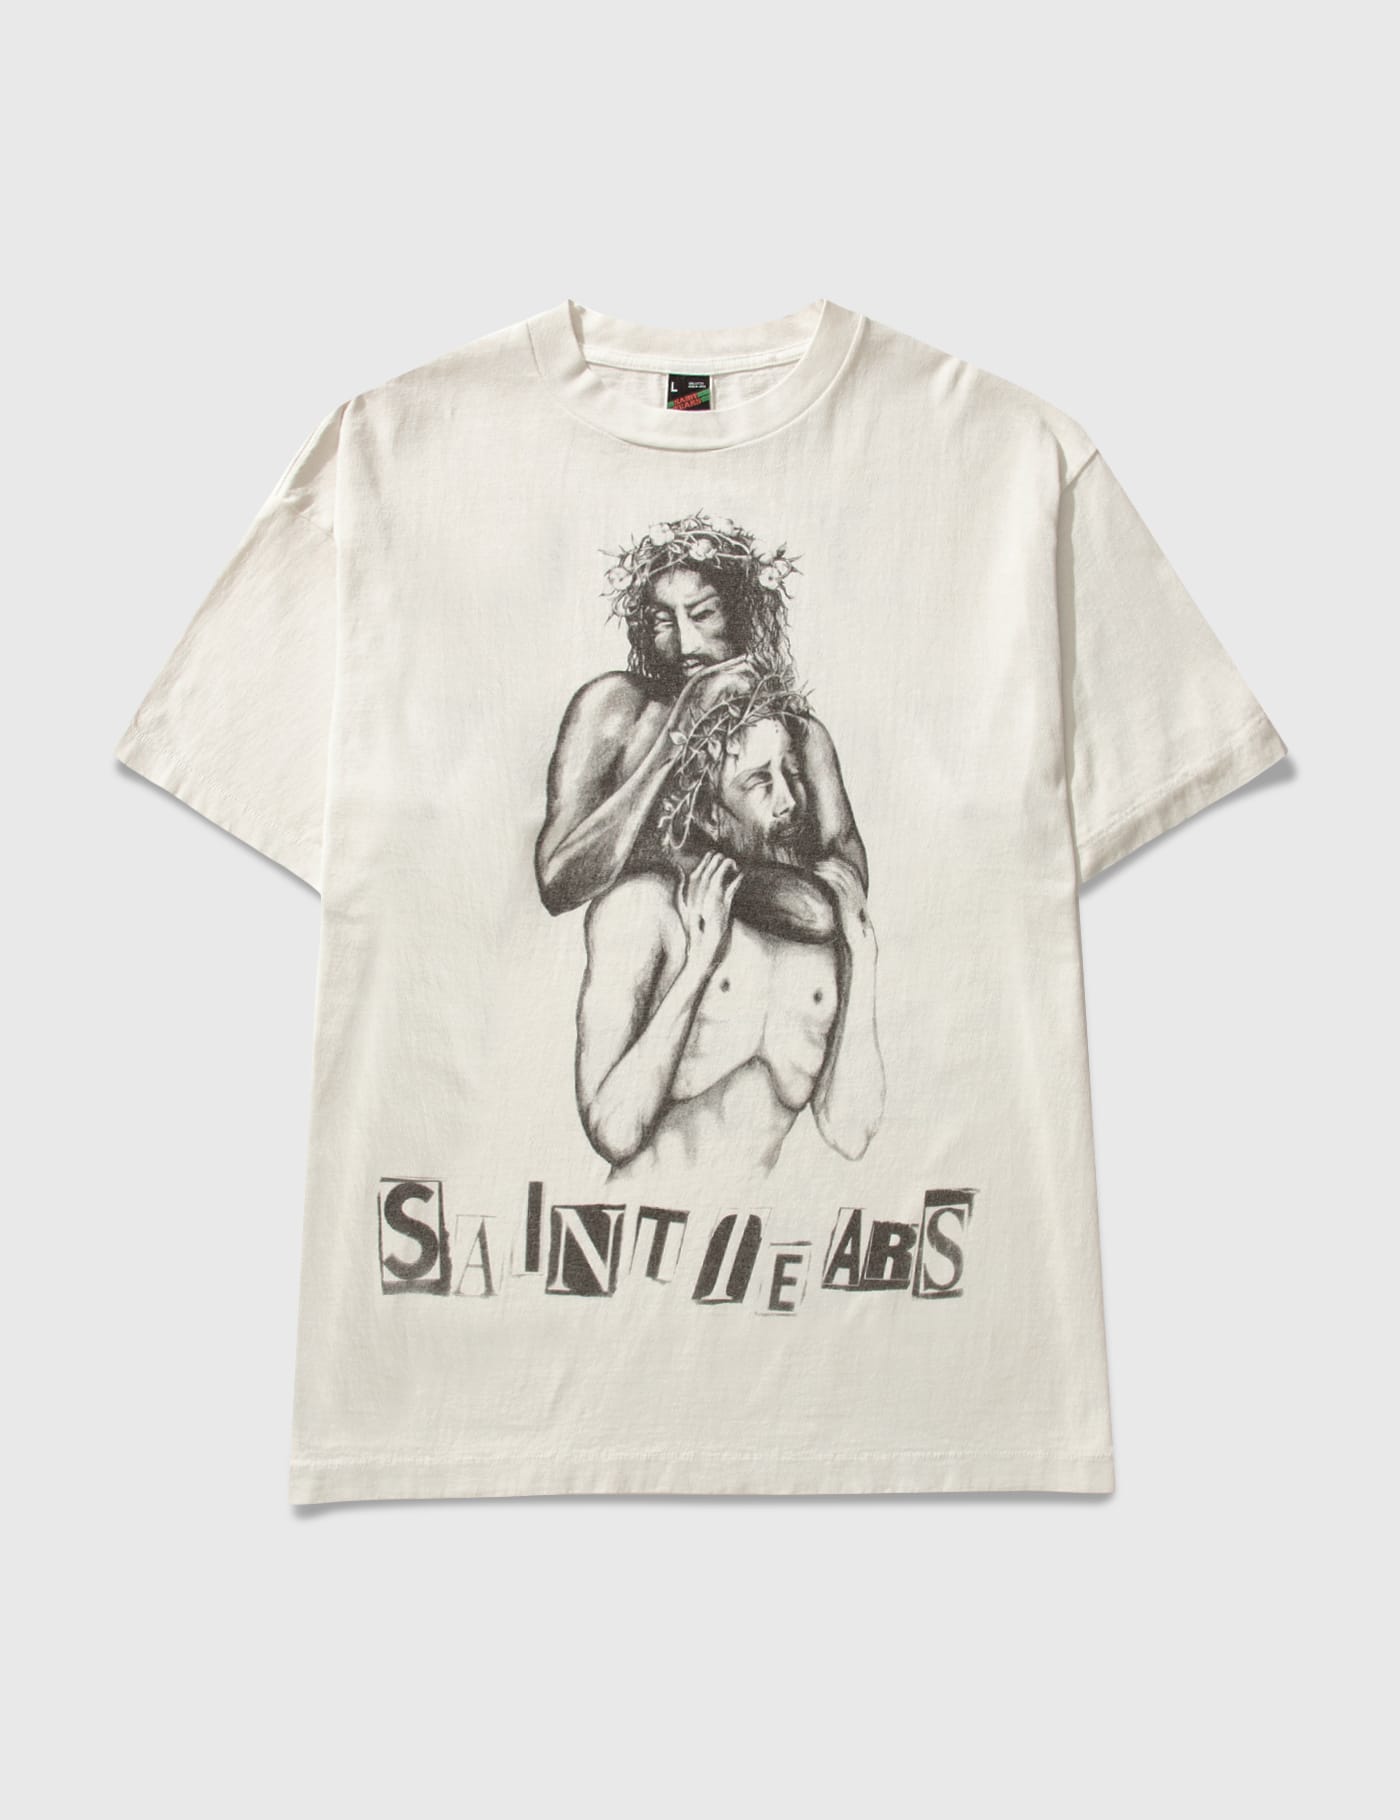 SAINT MICHAEL (セントマイケル)JESUS Tシャツ - Tシャツ/カットソー